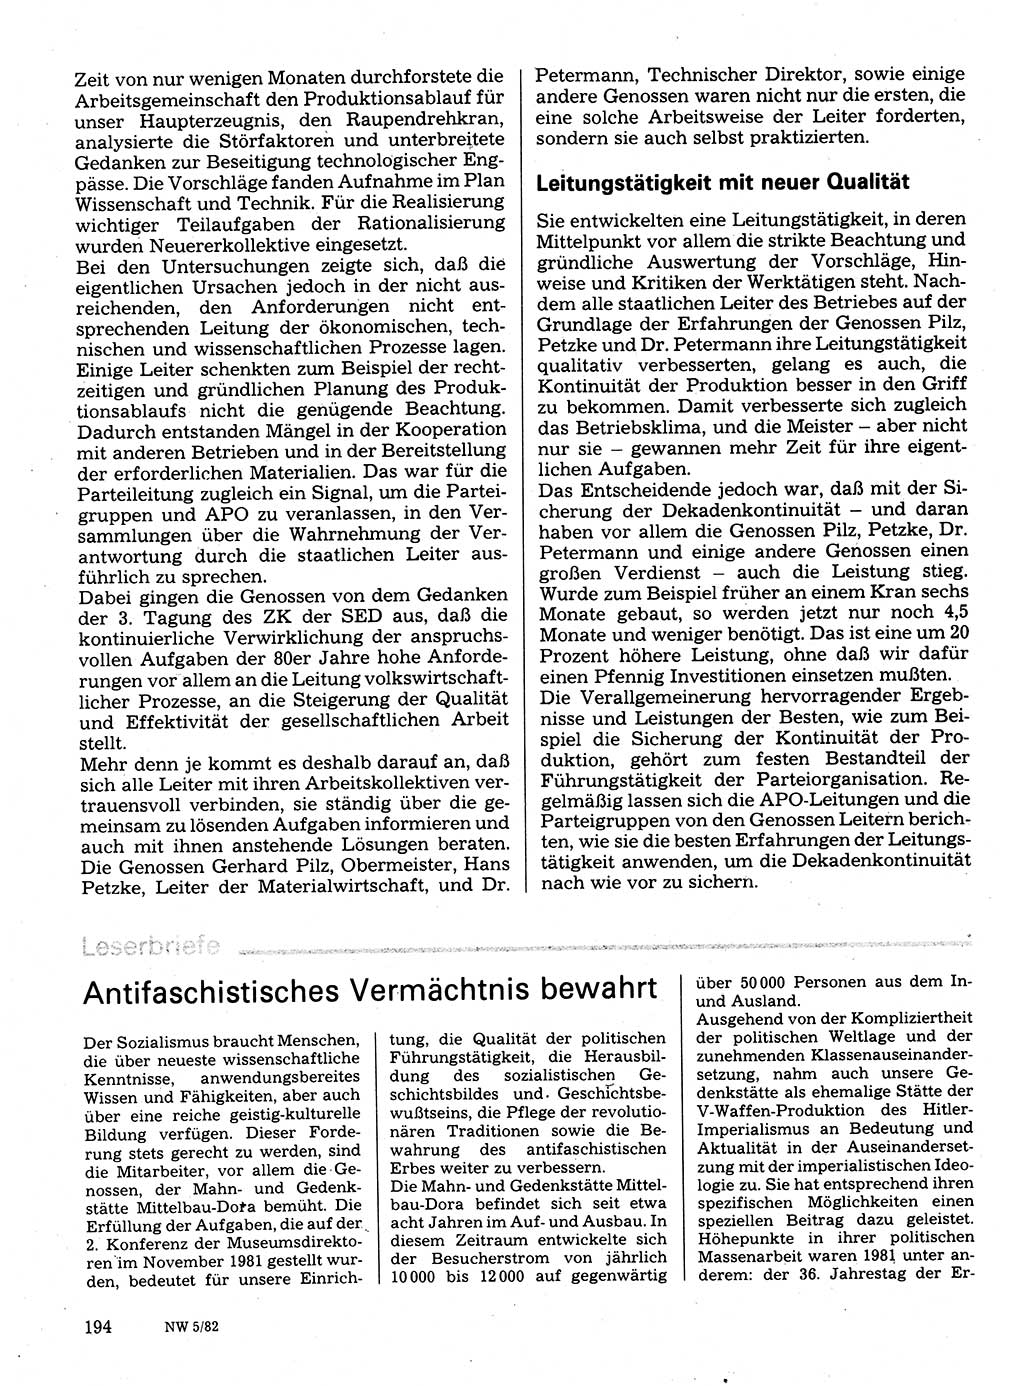 Neuer Weg (NW), Organ des Zentralkomitees (ZK) der SED (Sozialistische Einheitspartei Deutschlands) für Fragen des Parteilebens, 37. Jahrgang [Deutsche Demokratische Republik (DDR)] 1982, Seite 194 (NW ZK SED DDR 1982, S. 194)